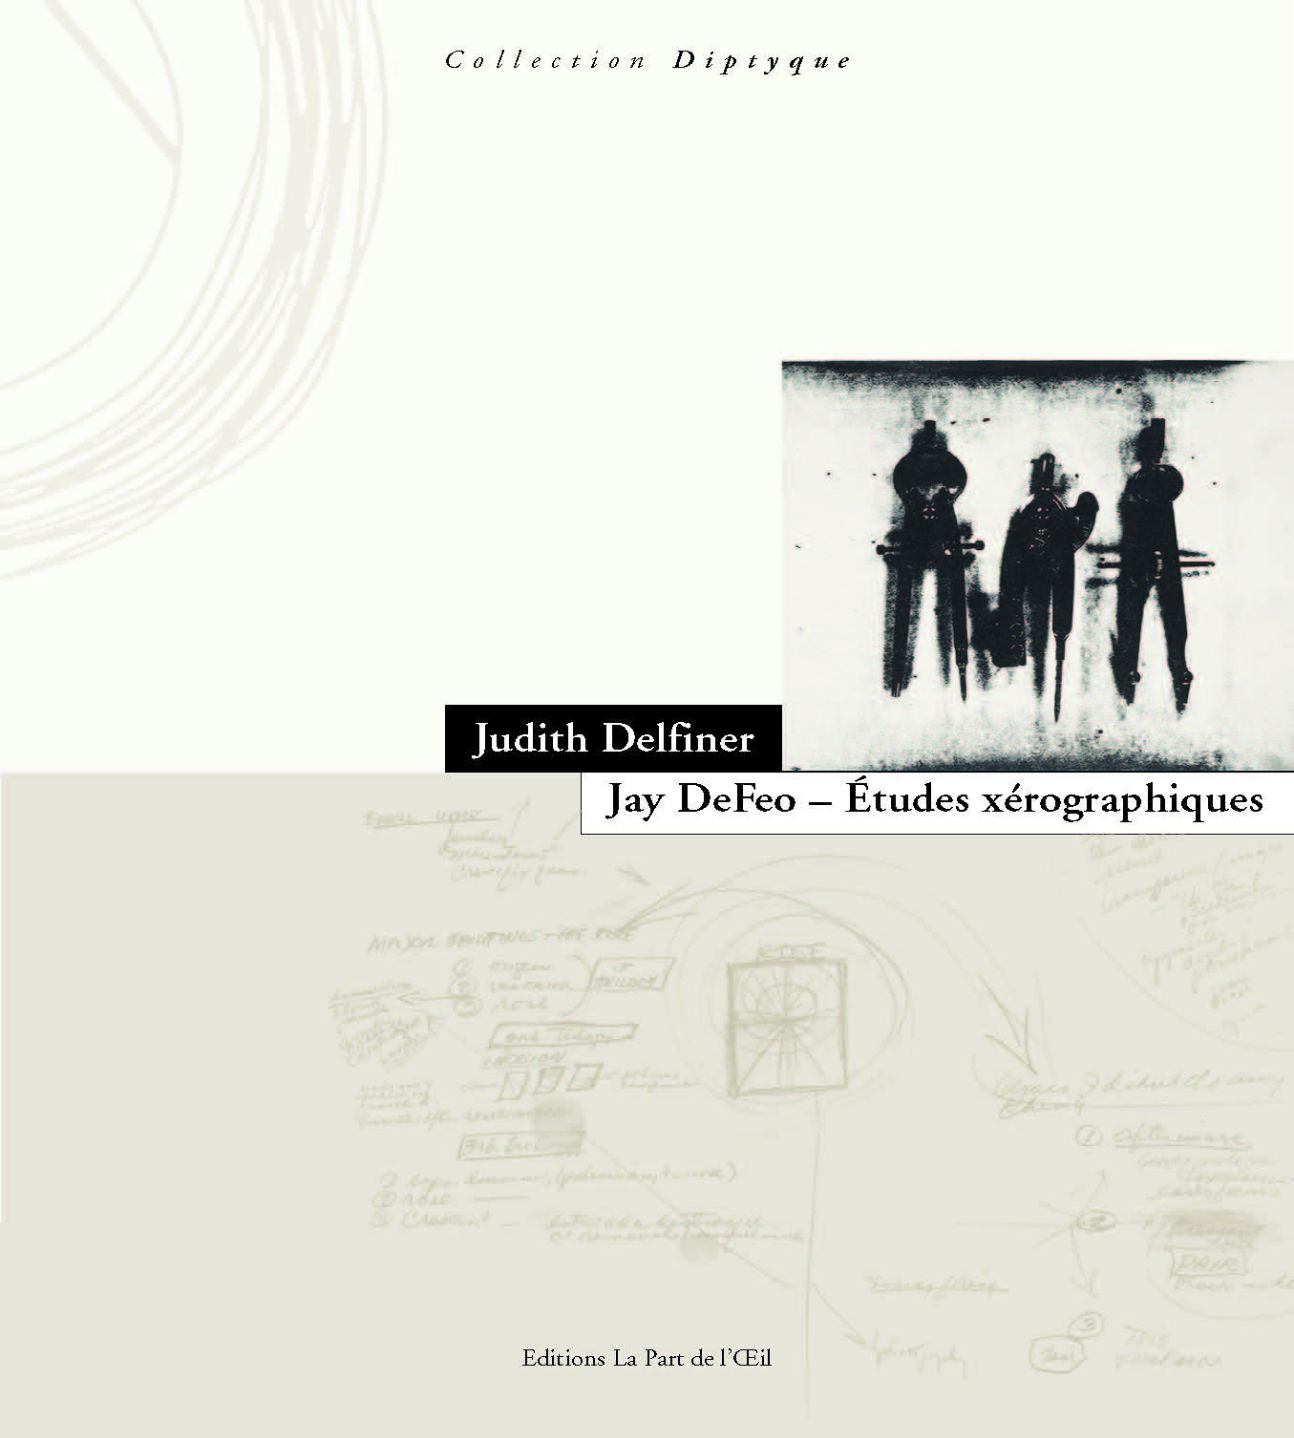 Judith Delfiner, Jay DeFeo : Études xérographiques